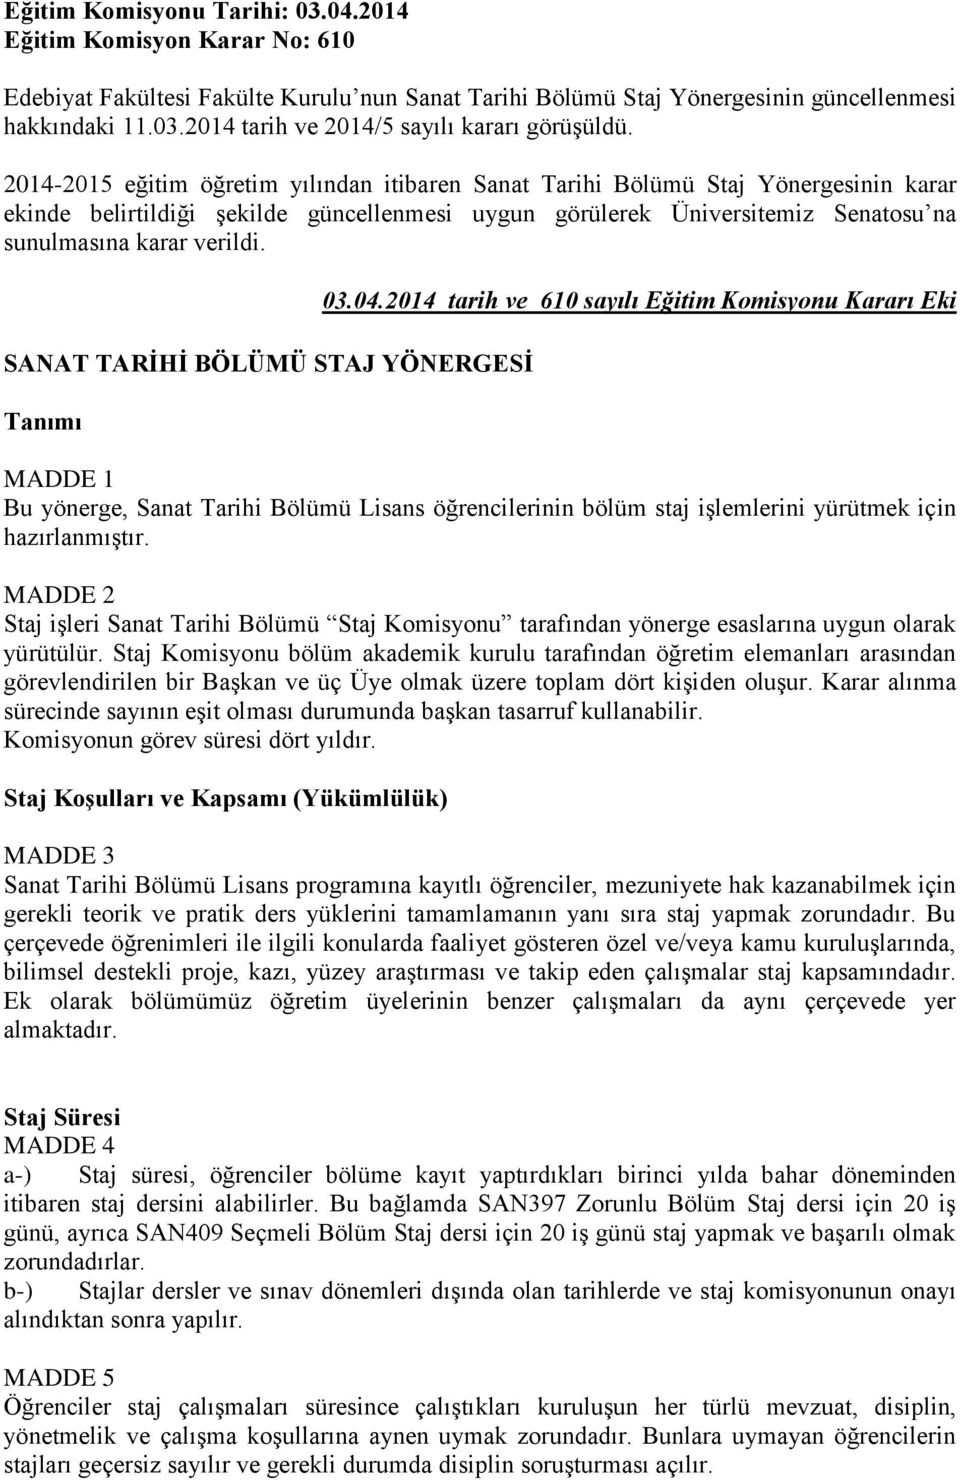 SANAT TARİHİ BÖLÜMÜ STAJ YÖNERGESİ Tanımı 03.04.